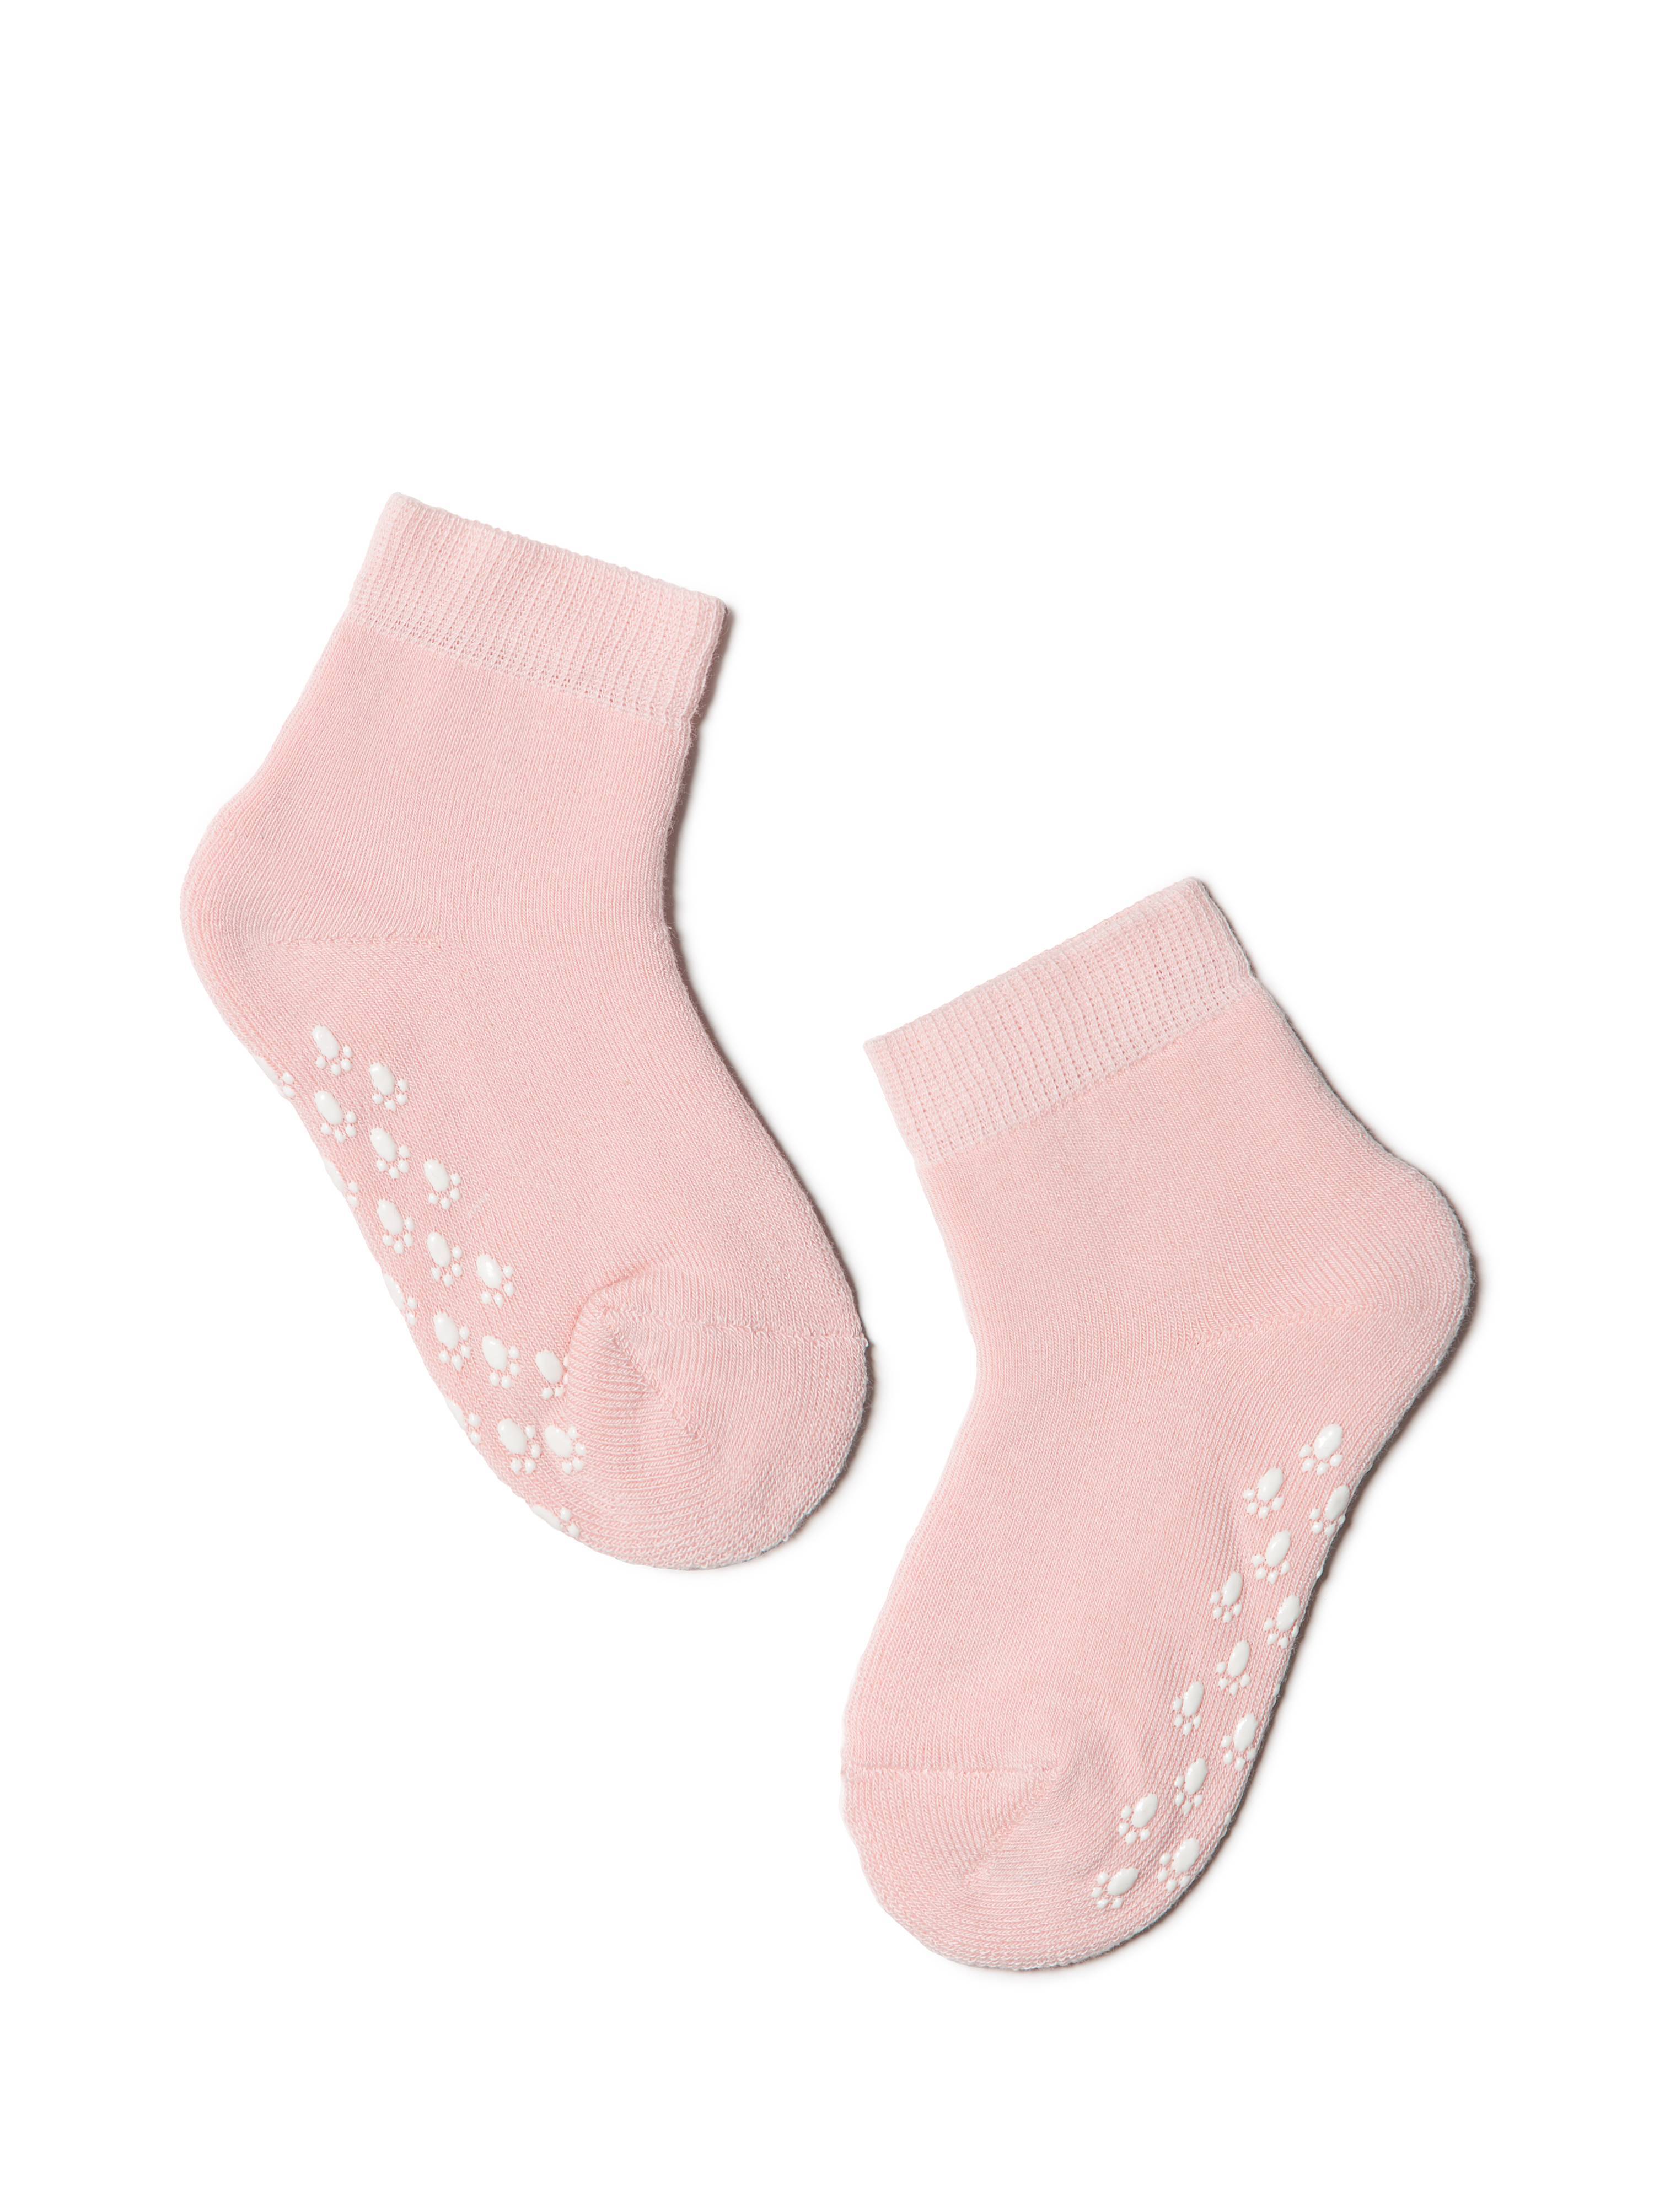 Носки хлопковые детские SOF-TIKI (махровые, антискользящие) светло-розовый Conte светло-розовый  